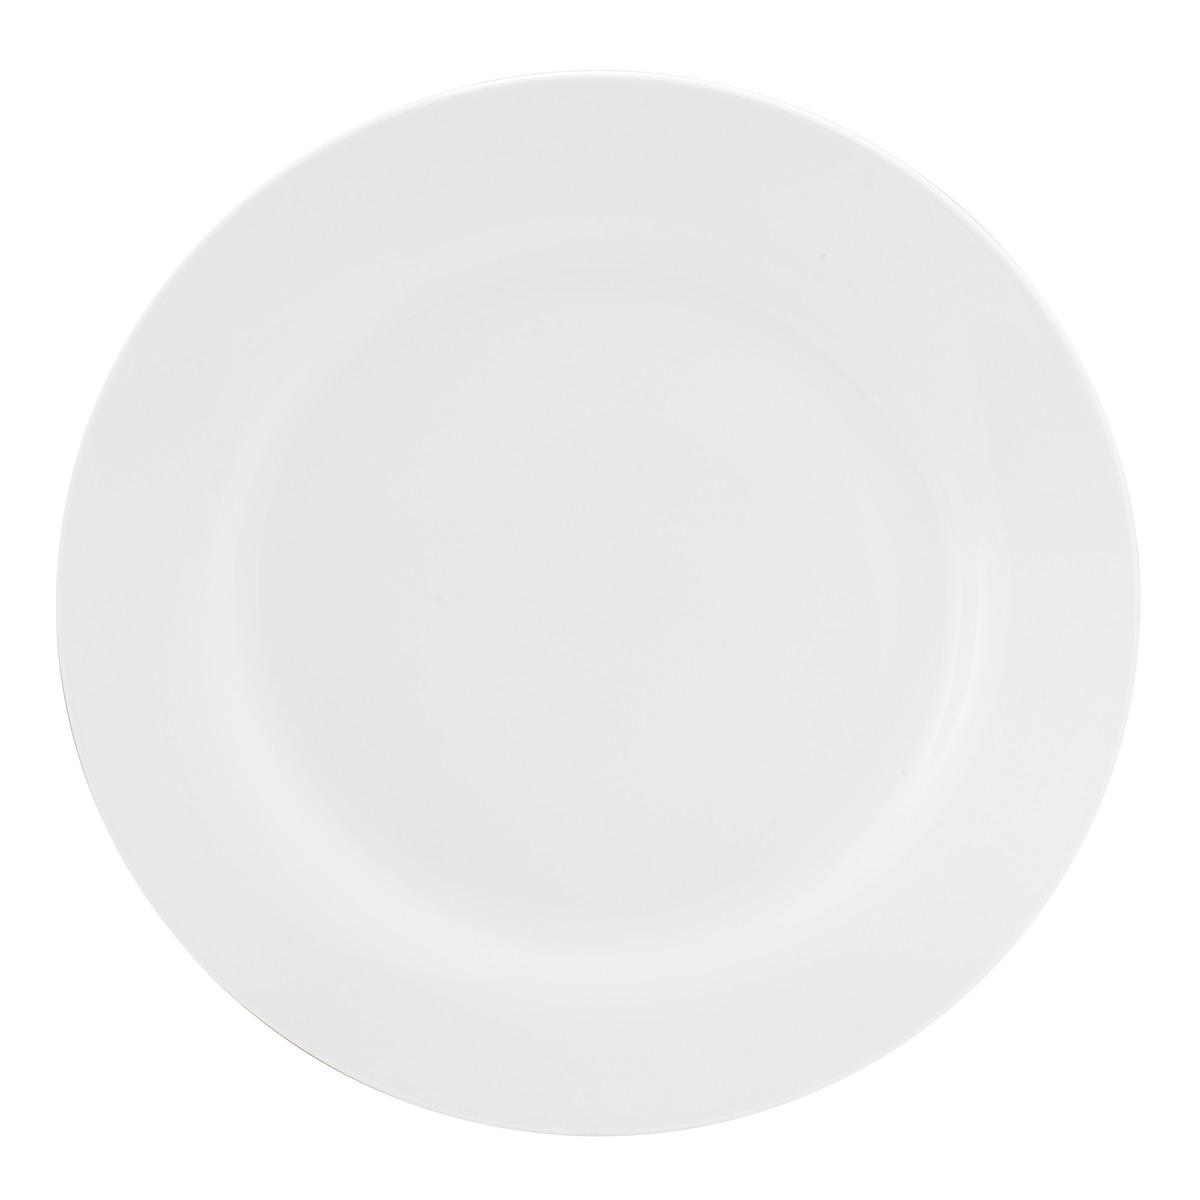 Assiette plate en porcelaine - Diamètre 24 cm - Blanc